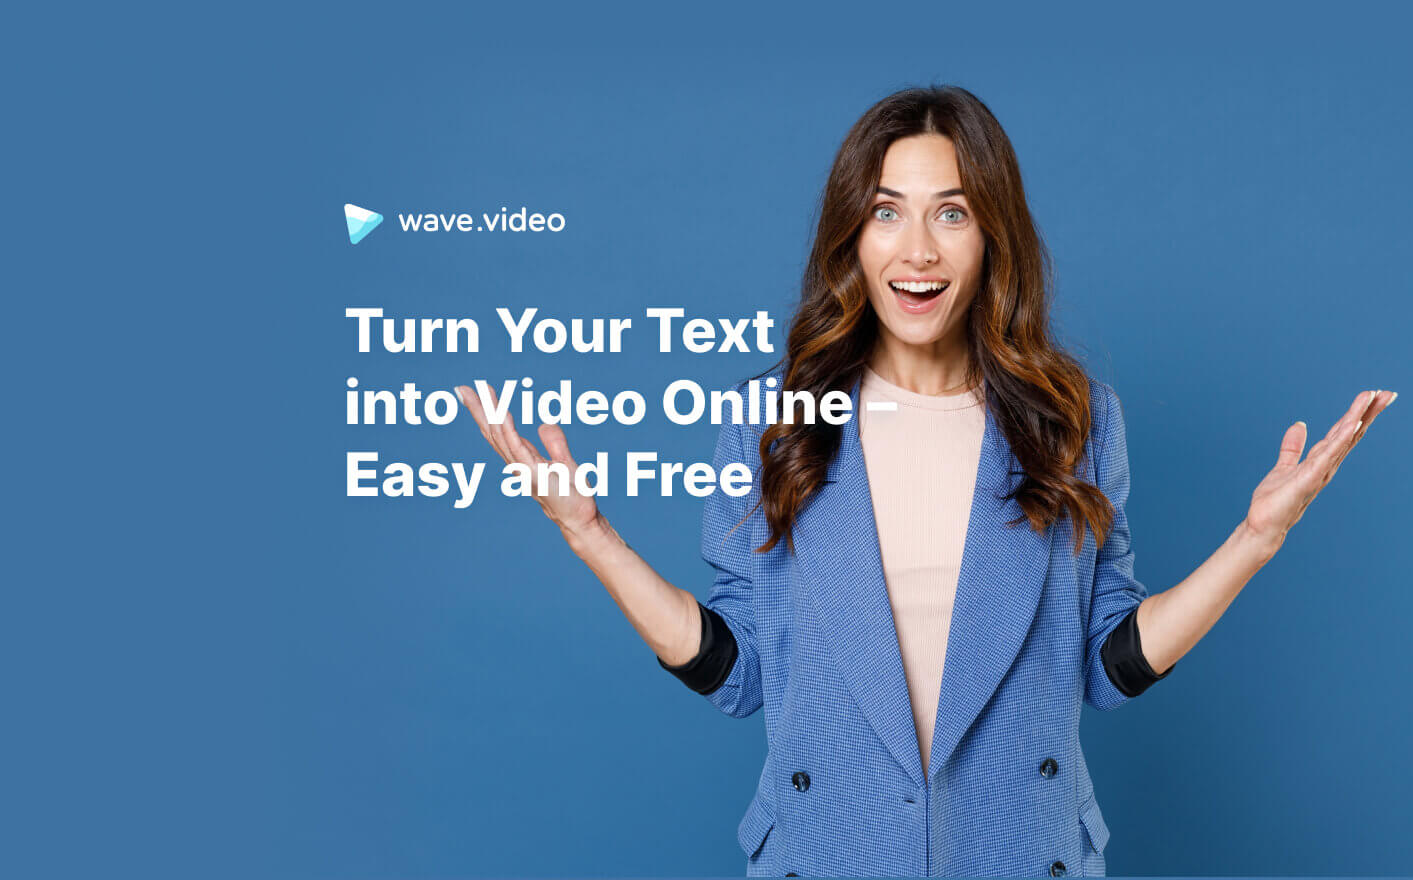 Zet uw tekst om in video met AI - eenvoudig en gratis | Wave.video